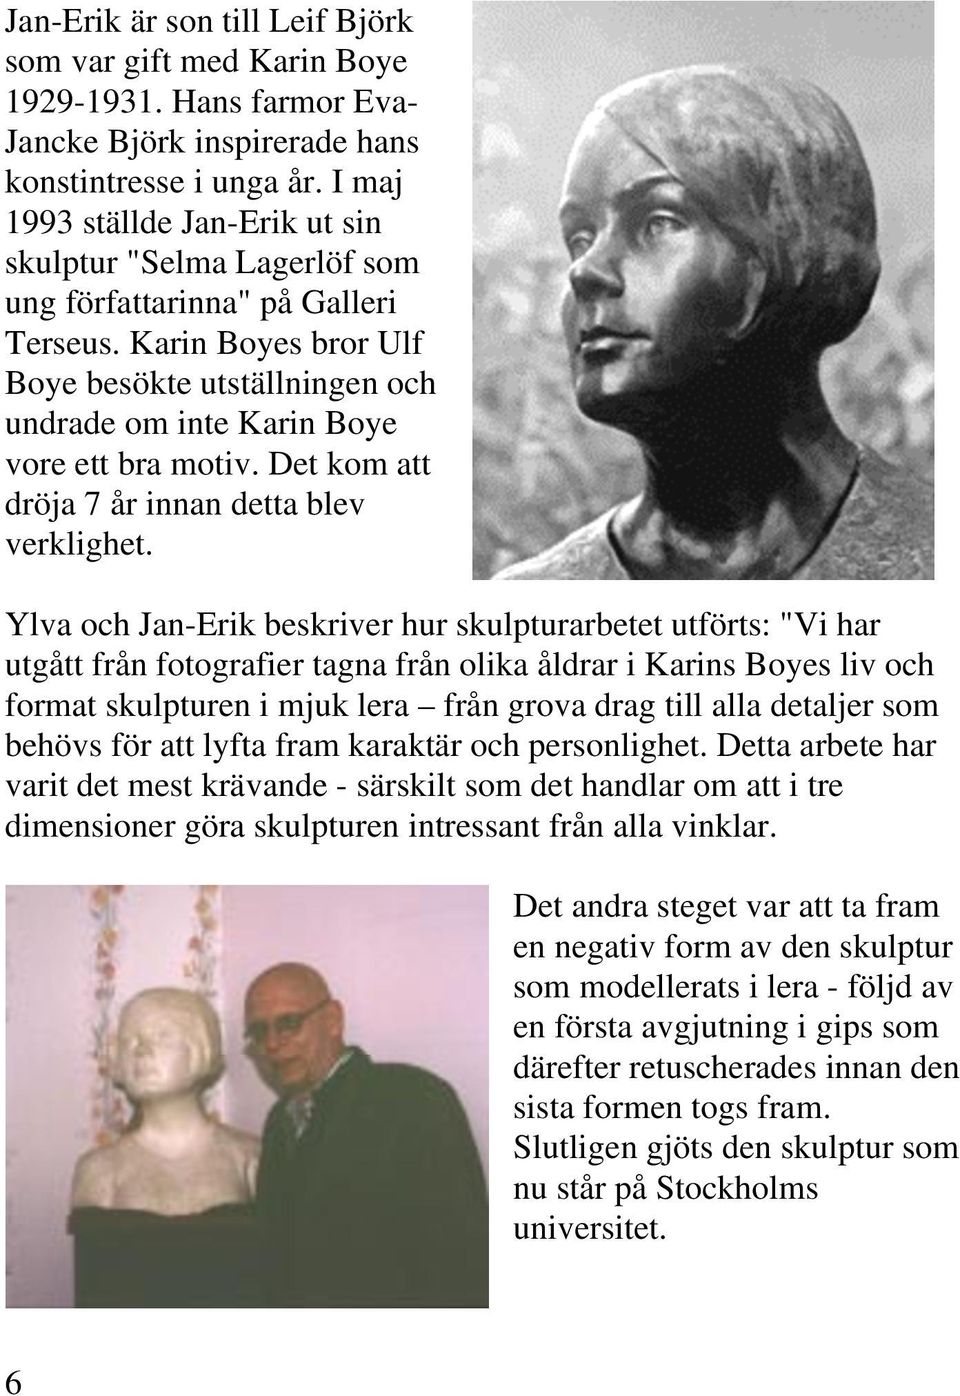 Karin Boyes bror Ulf Boye besökte utställningen och undrade om inte Karin Boye vore ett bra motiv. Det kom att dröja 7 år innan detta blev verklighet.